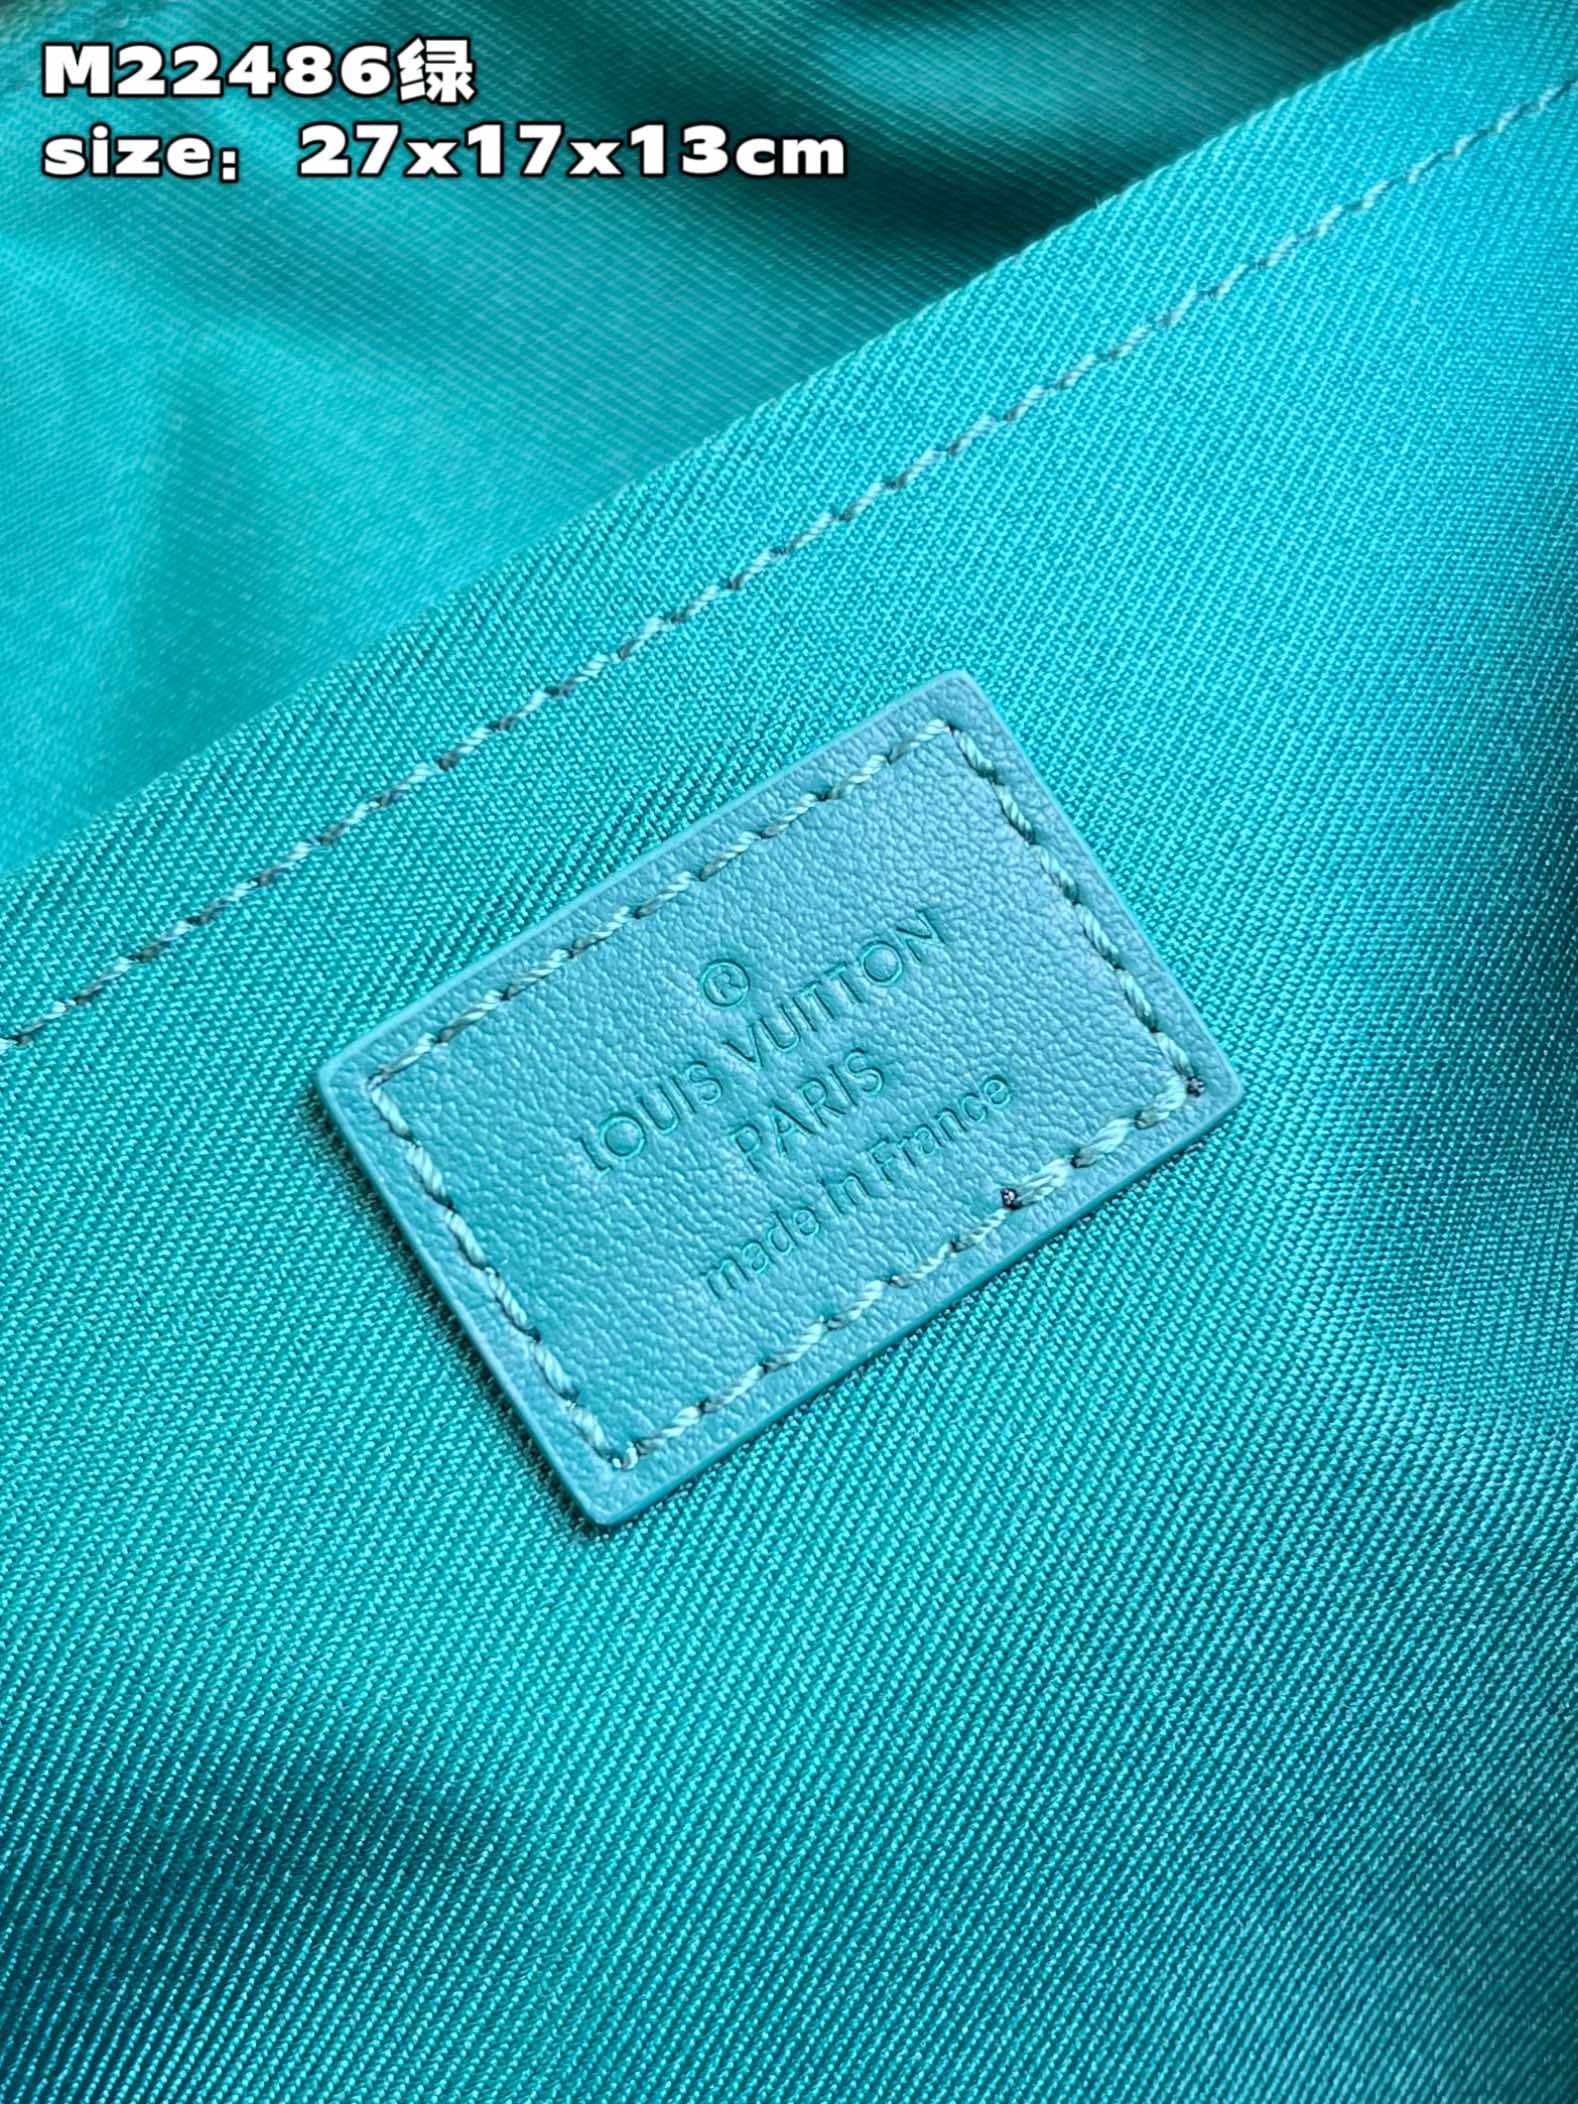 顶级原单M22486绿本款CityKeepall手袋选用牛皮革皮革饰边和金属件讲述路易威登Keepall